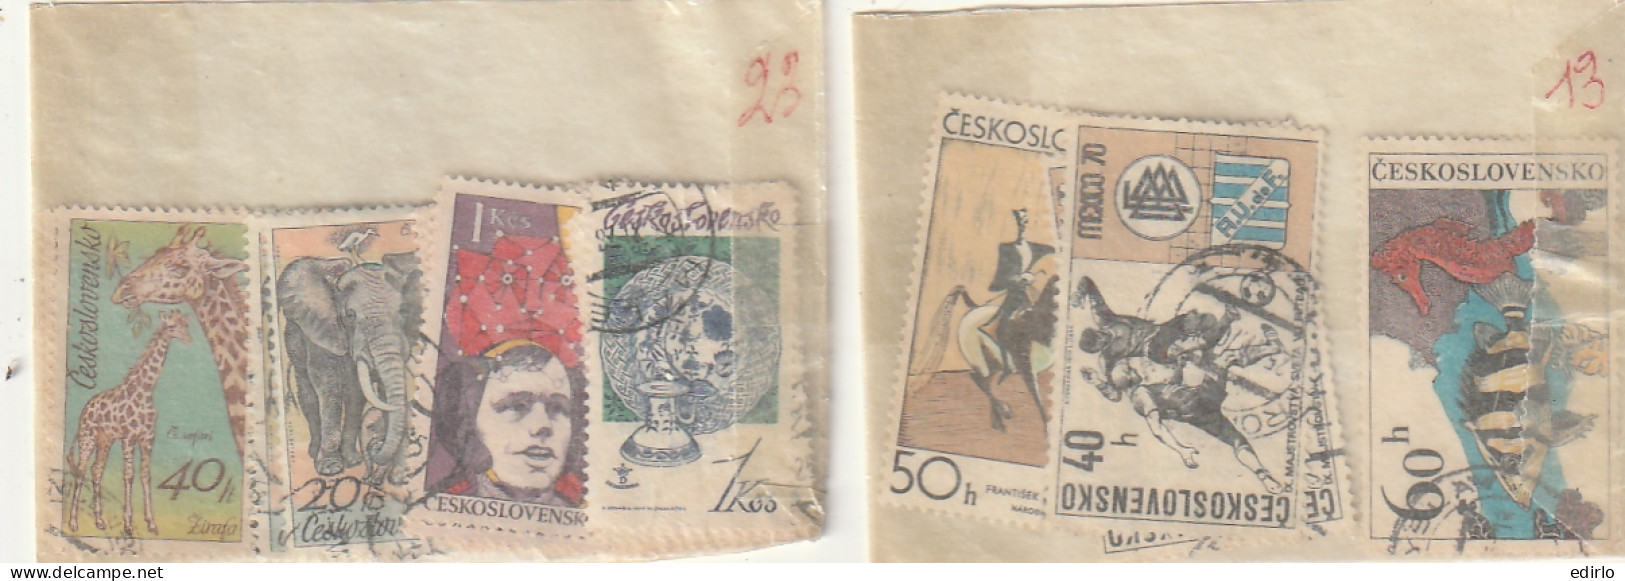 ///   TCHEKOSLOVAQUIE ///  COLLECTION EN POCHETTES (timbres Superposés)  - Pas Trop Regardé Pour Pas De Regrets - Colecciones & Series